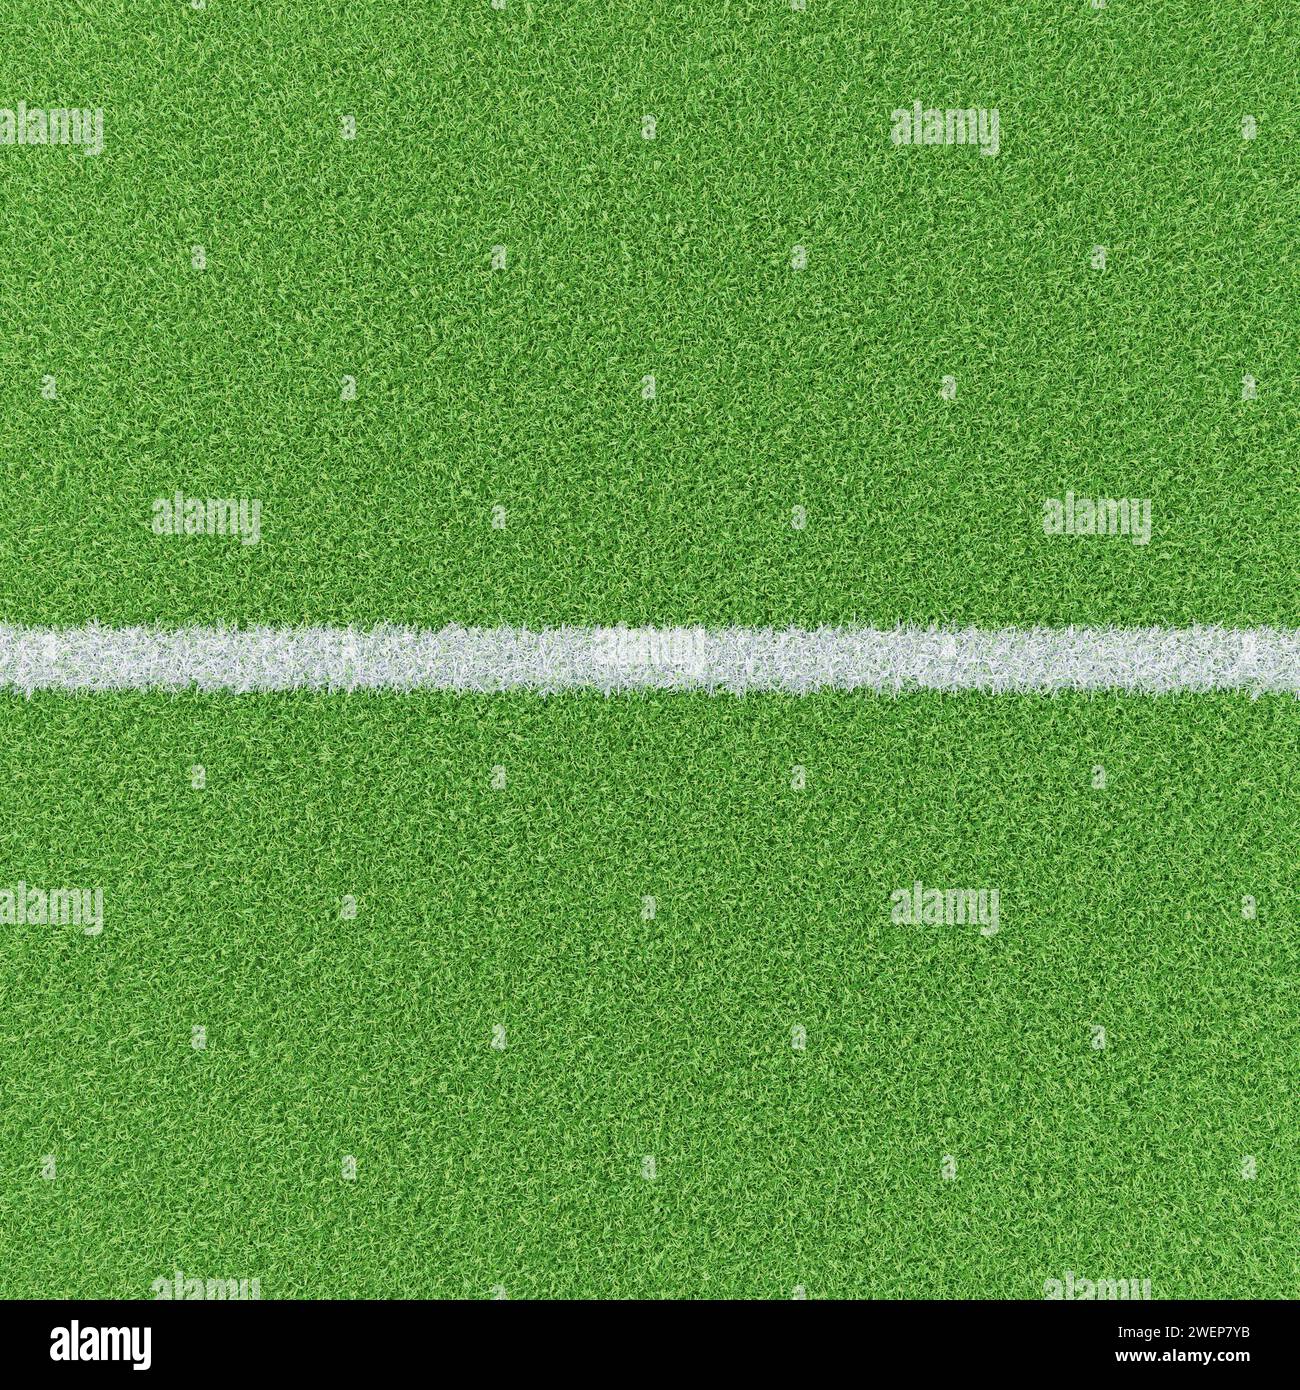 Filo di gesso su un campo di erba ben curato. Immagine di base per compositi per immagini di calcio o sport calcistici. Vista ad alto angolo. Foto Stock